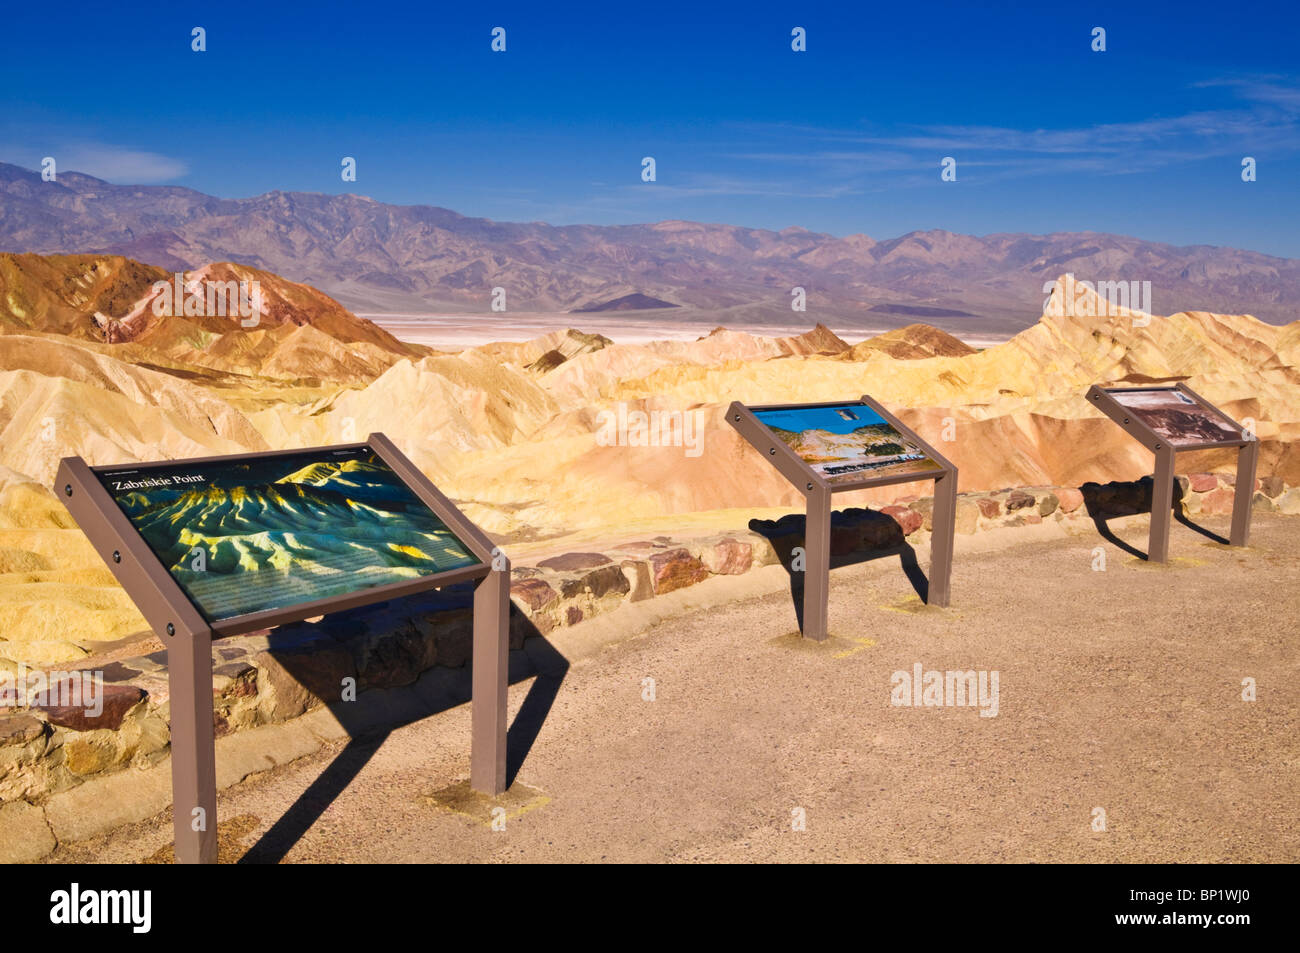 Des panneaux d'interprétation à Zabriskie Point, Death Valley National Park. Californie Banque D'Images